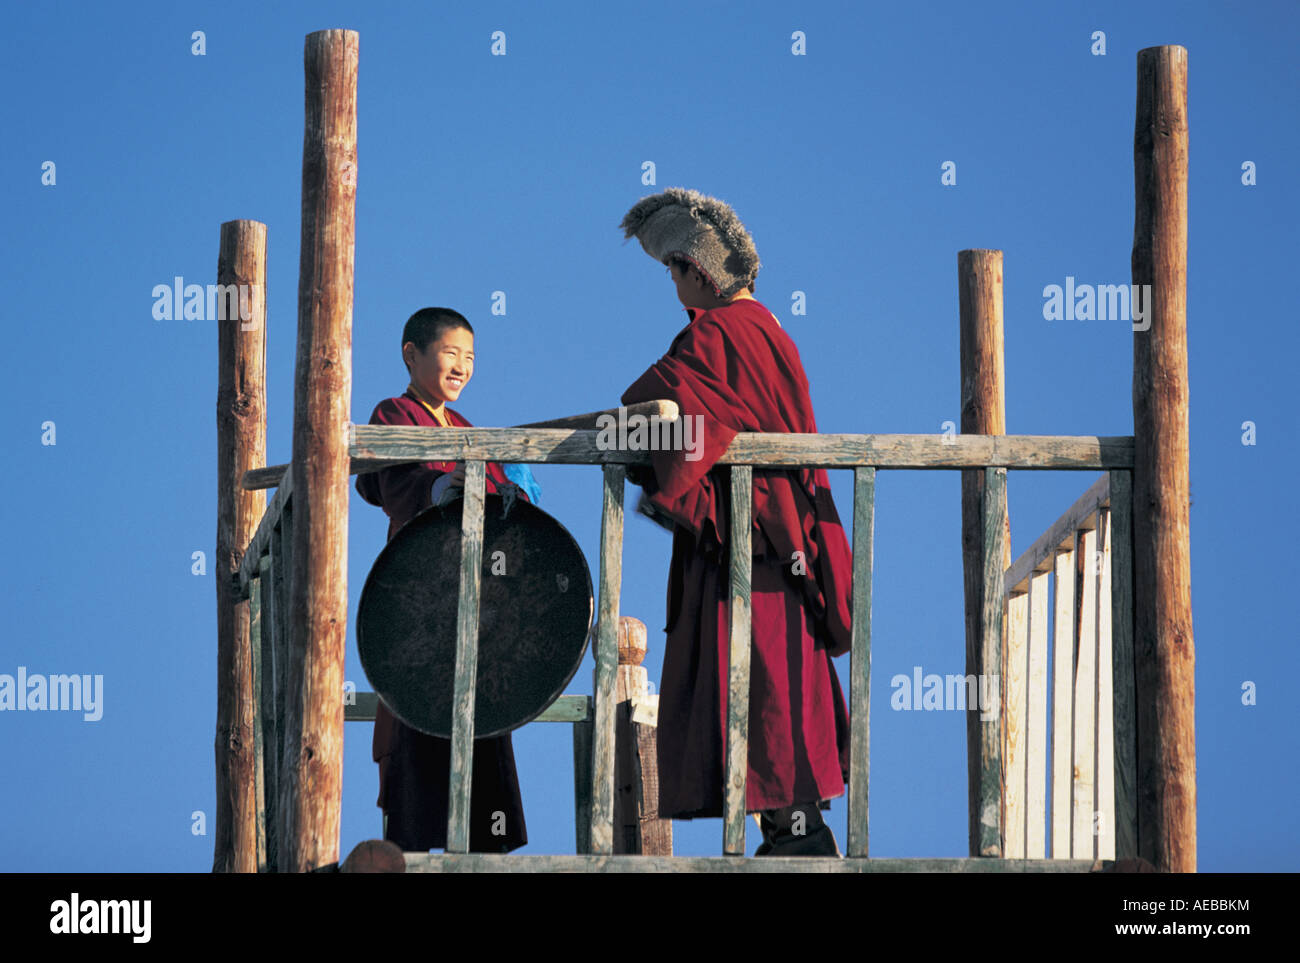 Gandan Khiid Monastery Ulaan Baatar Mongolia Stock Photo